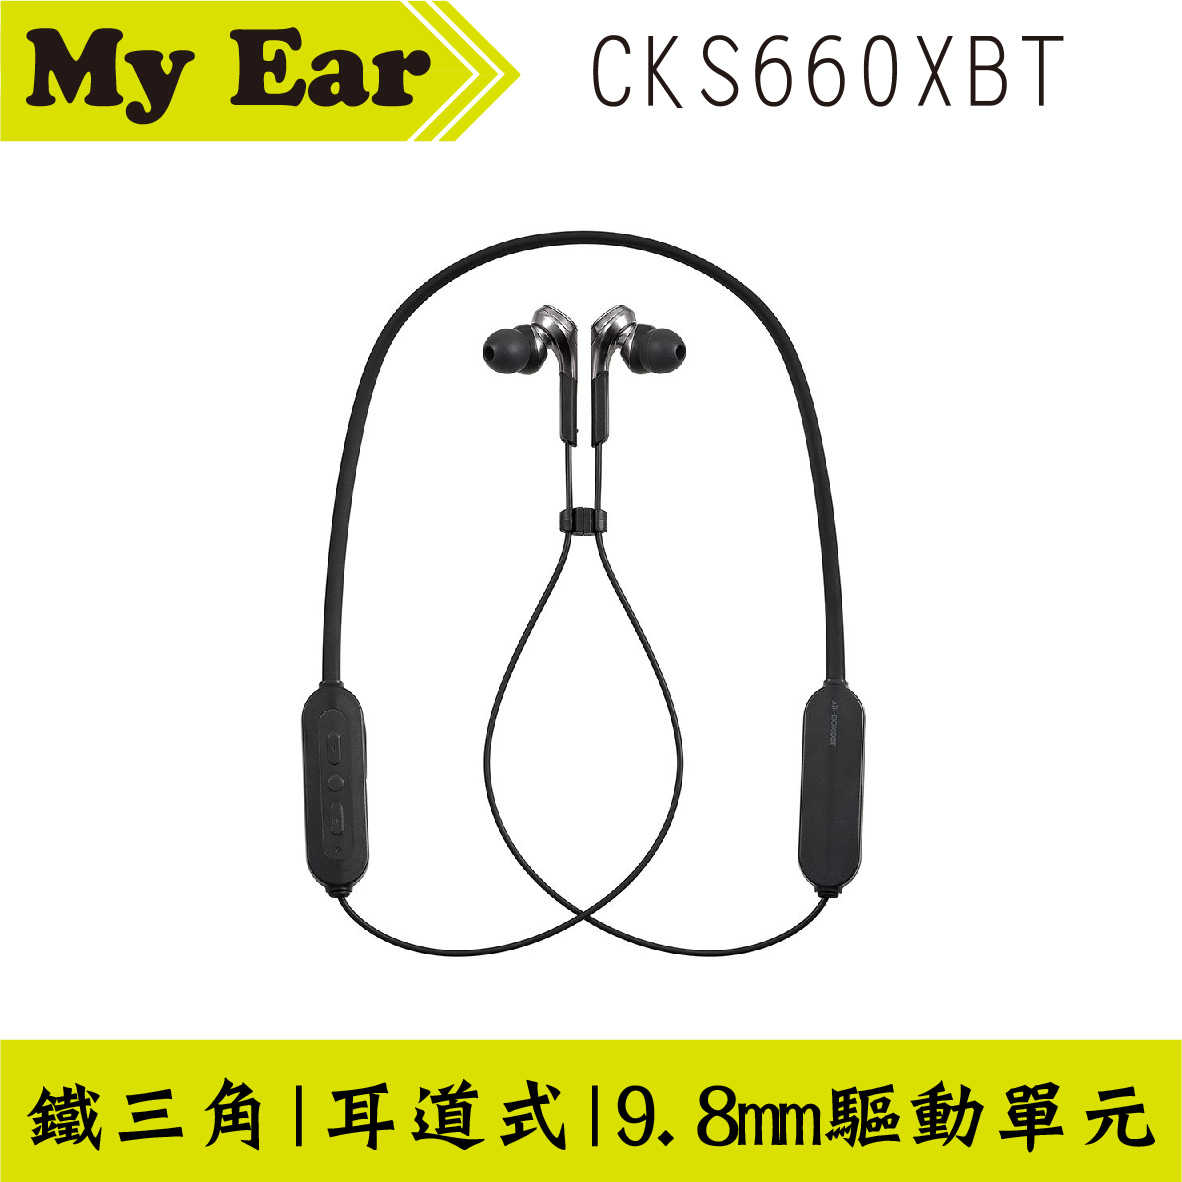 鐵三角 ATH-CKS660XBT 古銅金 重低音 麥克風 藍芽 繞頸 耳塞式 耳機｜ My Ear耳機專門店